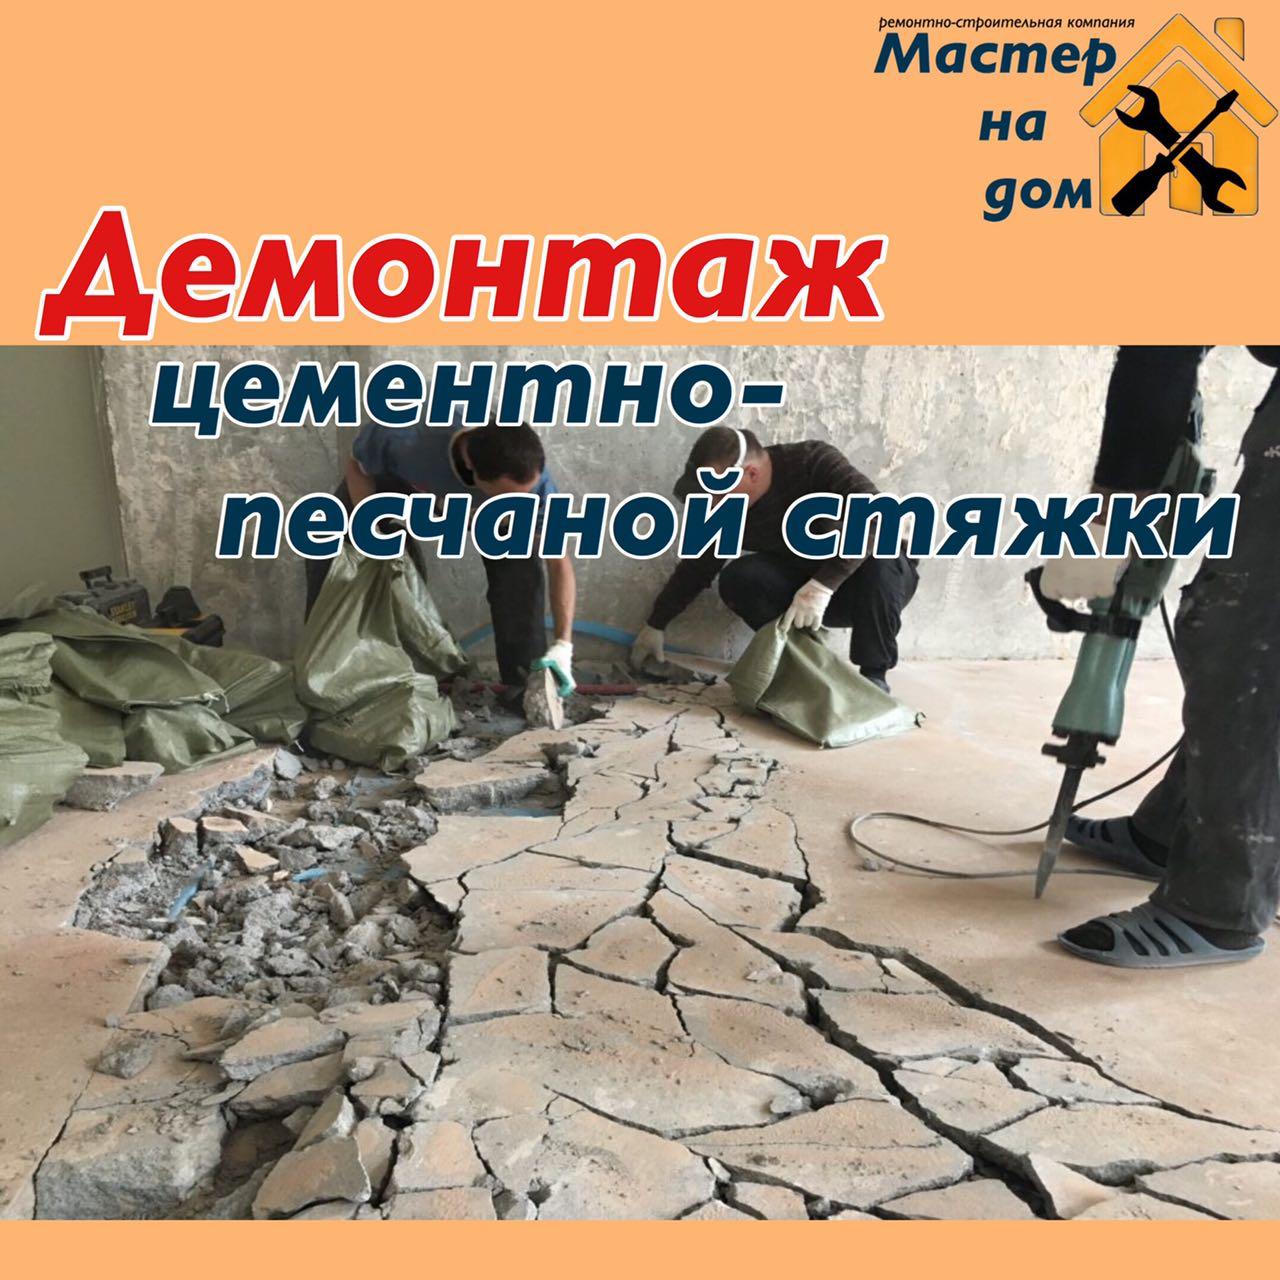 Демонтаж цементно-піщаного стяжки підлоги в Новогоосковську